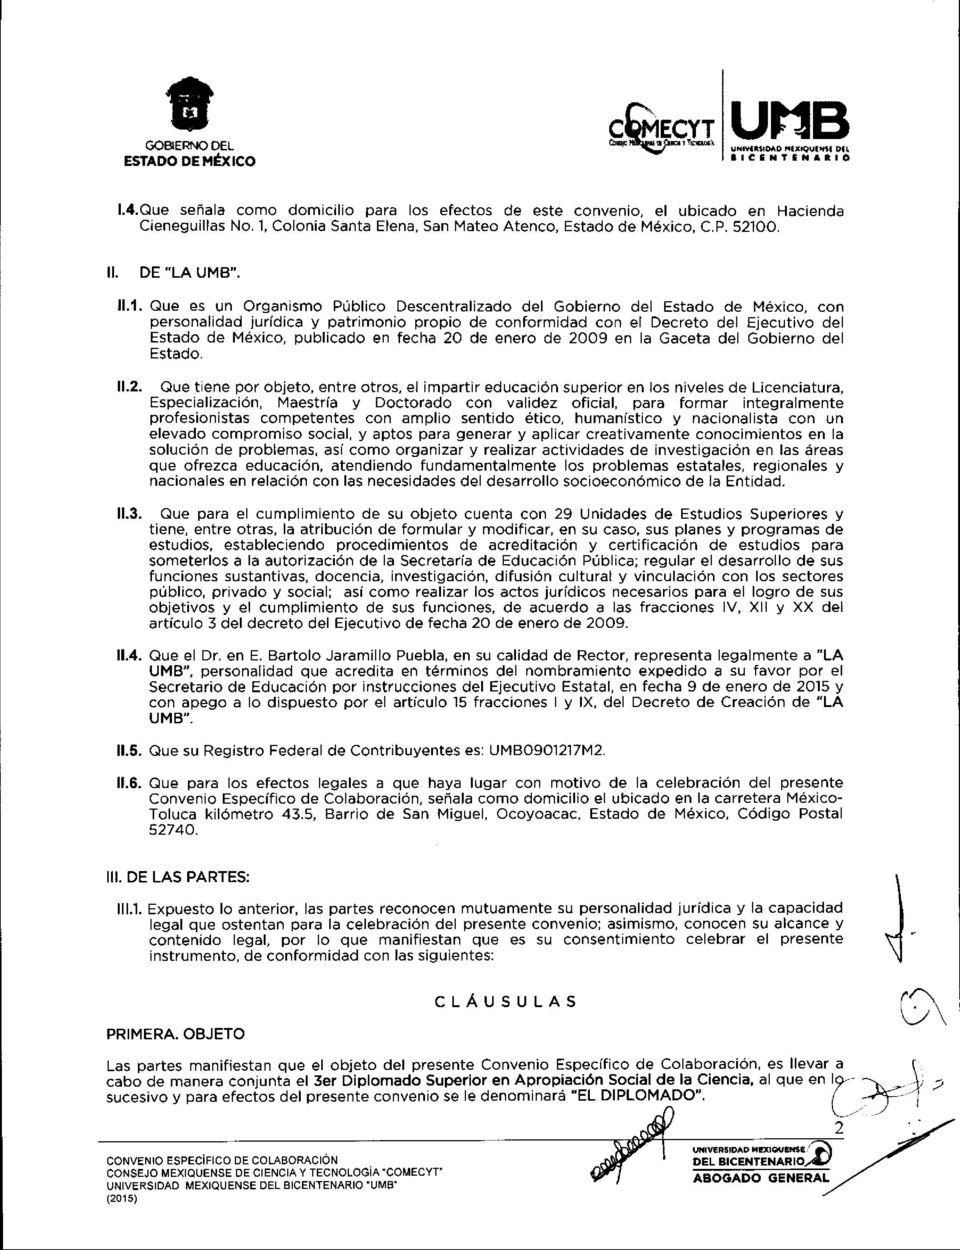 patrimonio propio de conformidad con el Decreto del Ejecutivo del Estado de Mexico, publicado en fecha 20